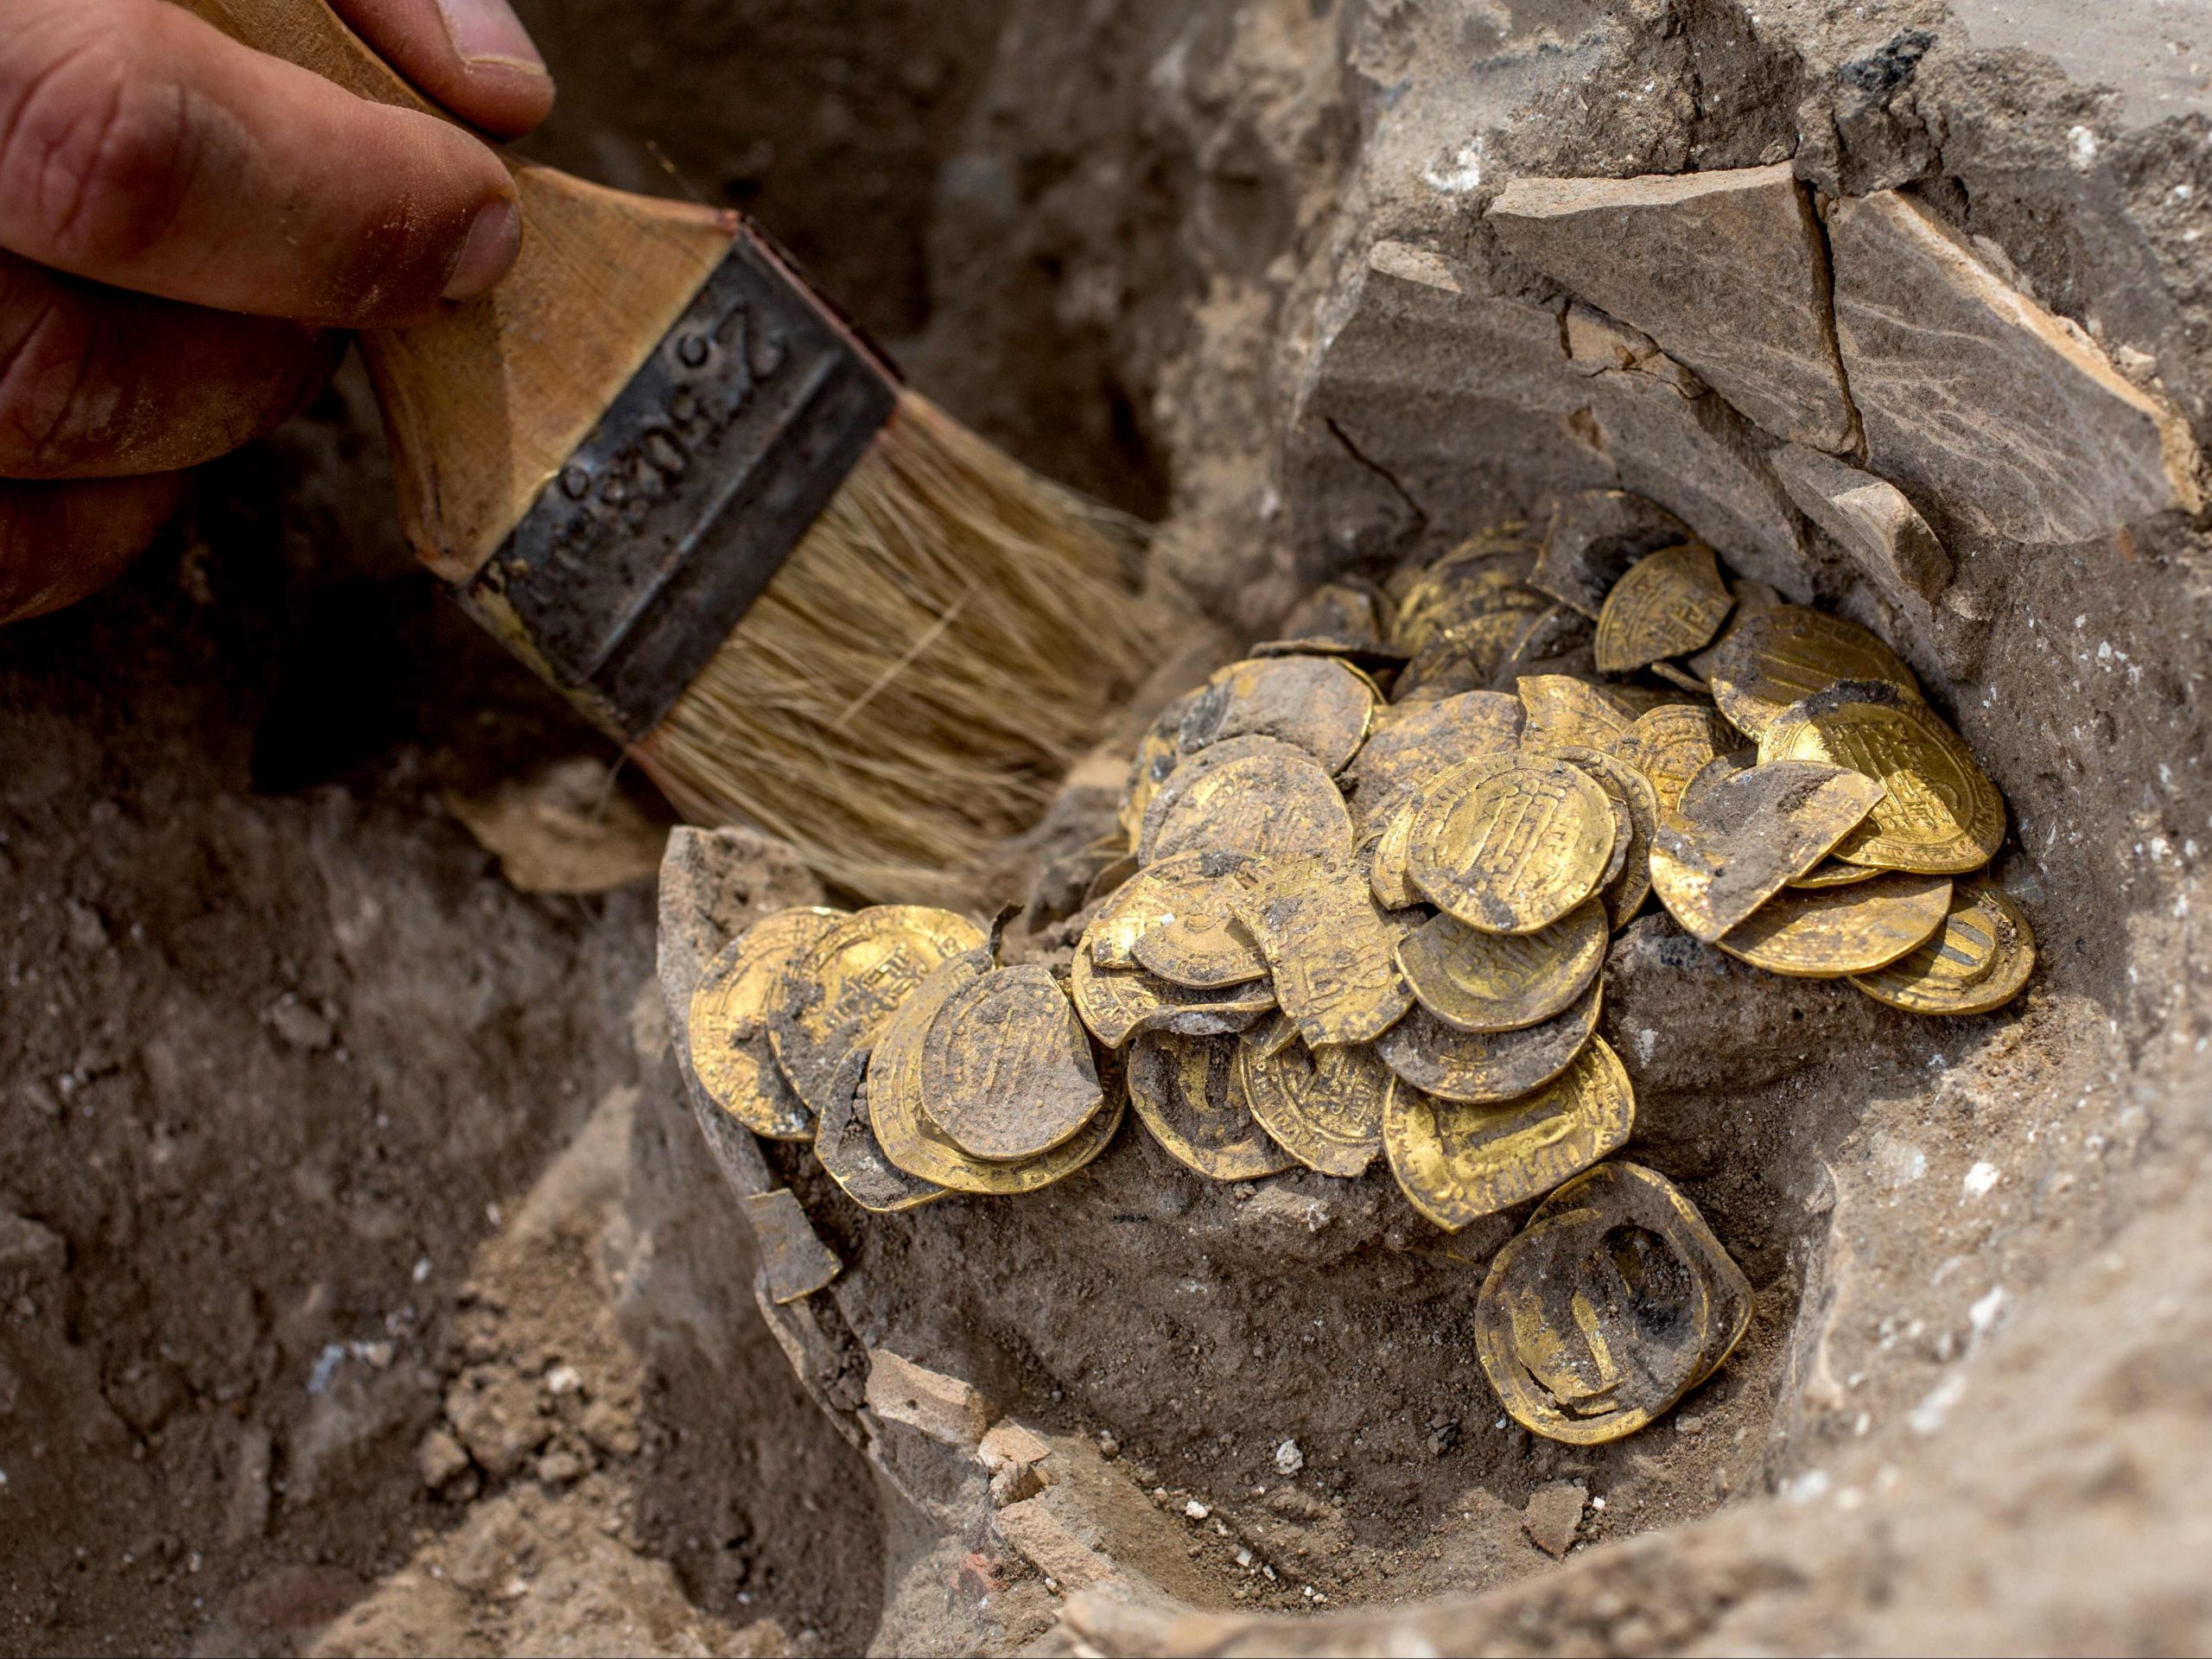 Tesoro de monedas encontrado con un detector de metales - Amazing United State